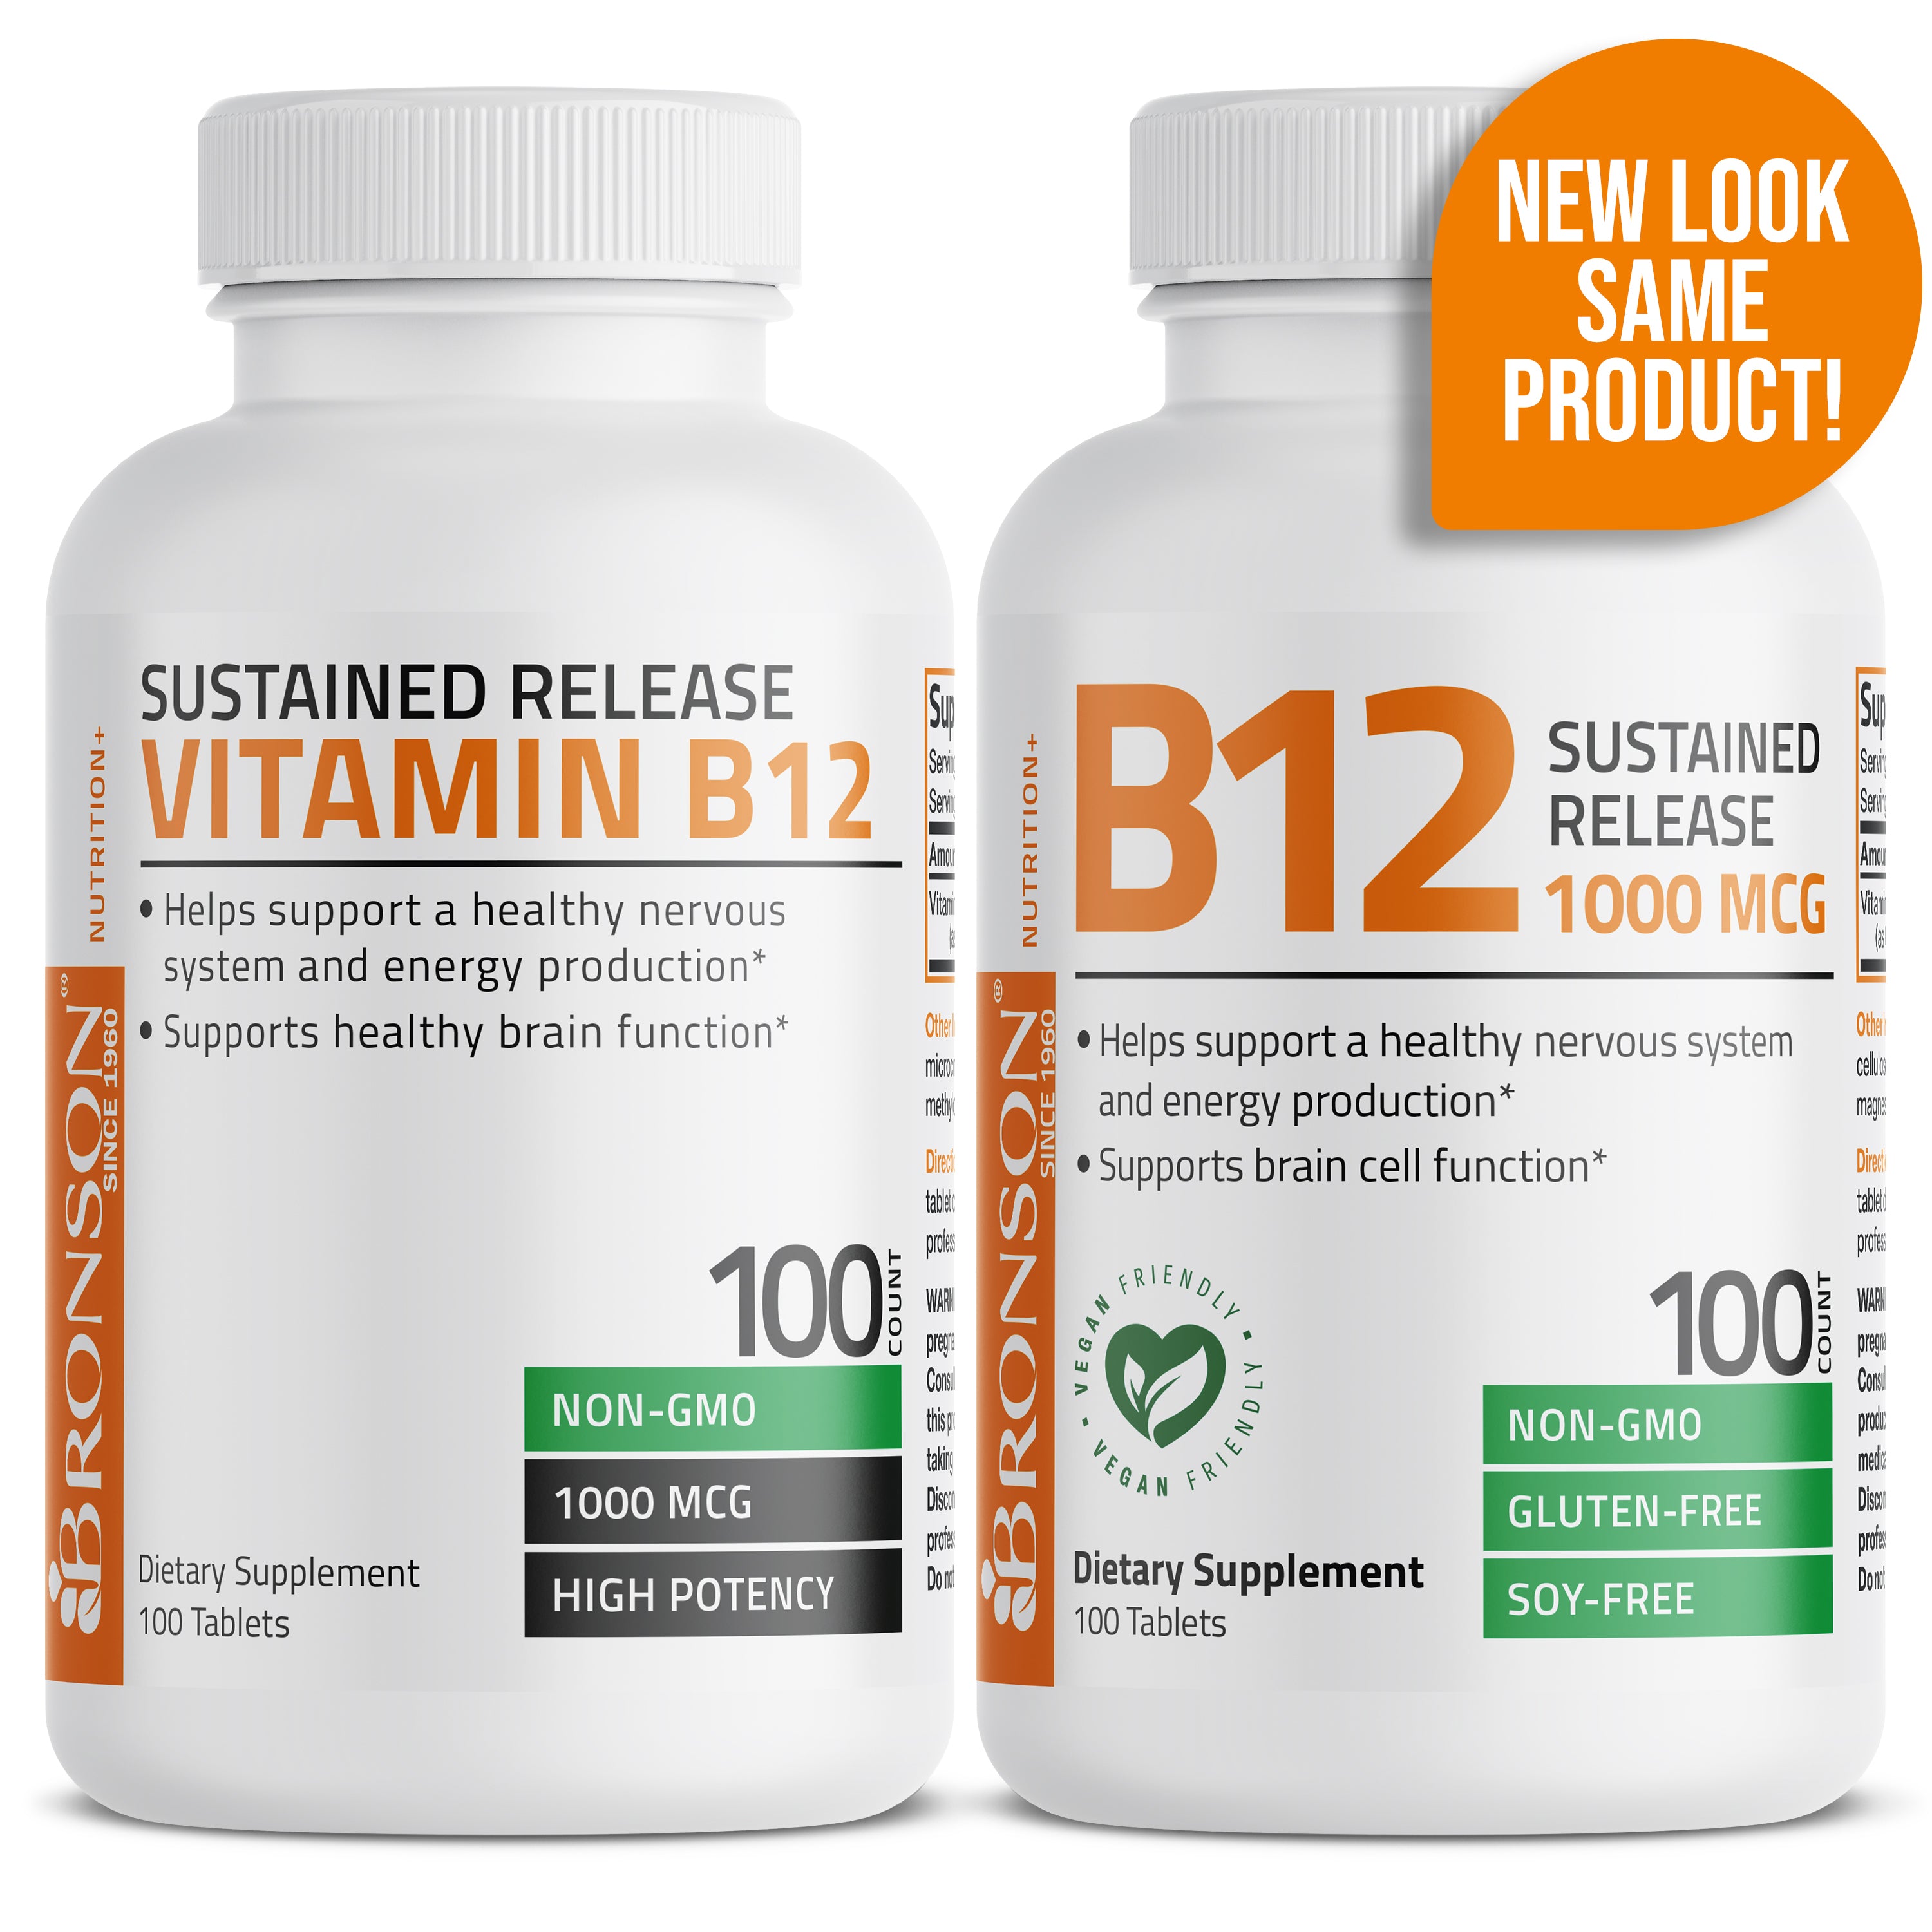 Vitamin B12 Sustained Release Non-GMO - 1,000 mcg view 12 of 5